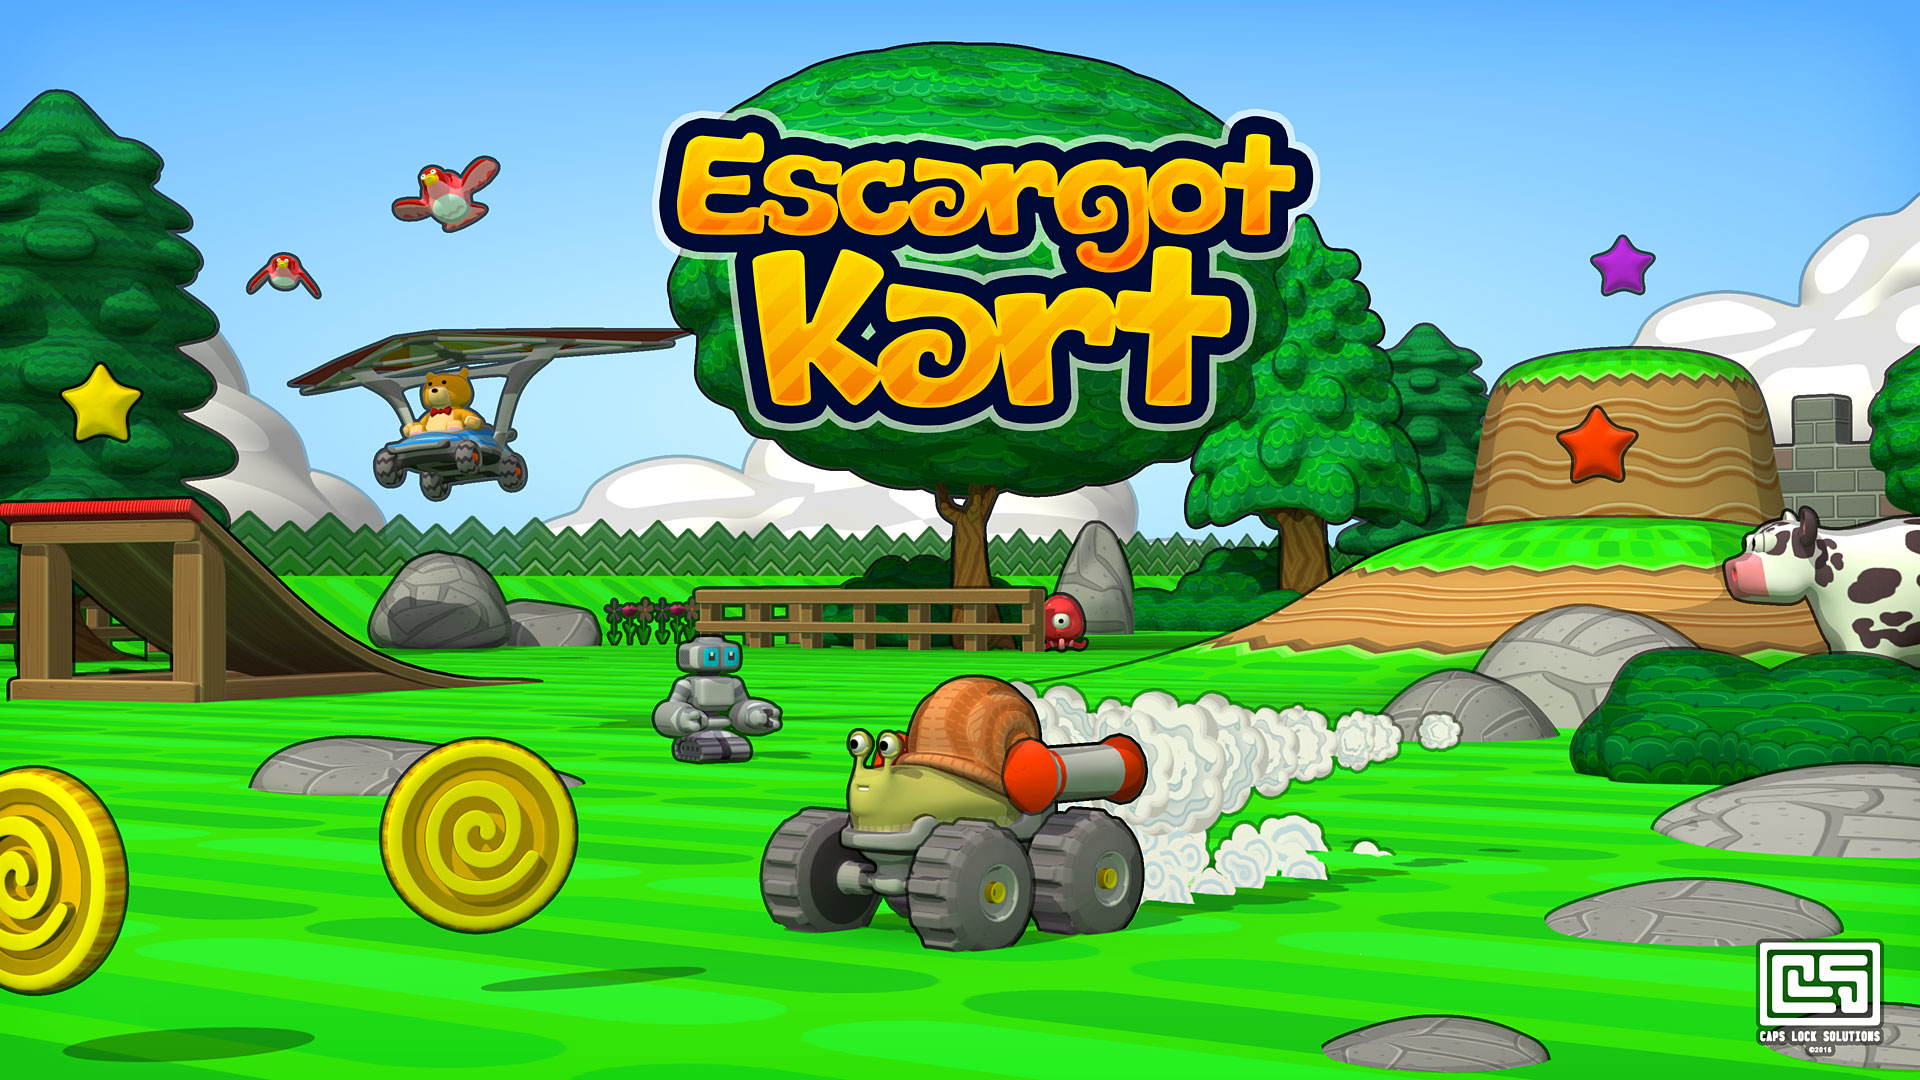 Escargot Kart screenshot 1